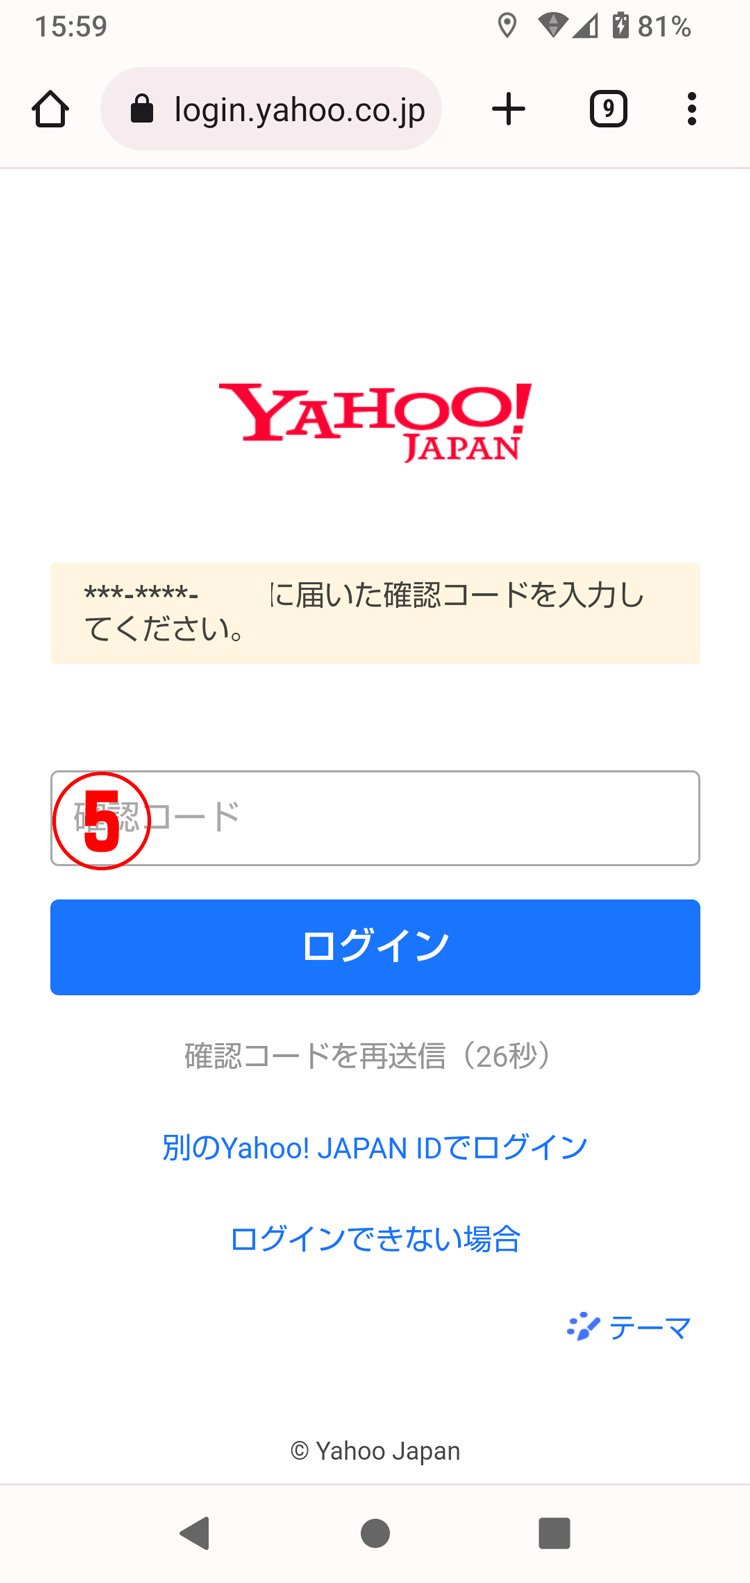 Yahoo! JAPAN IDのログインをSMS認証からパスワードに変更する方法